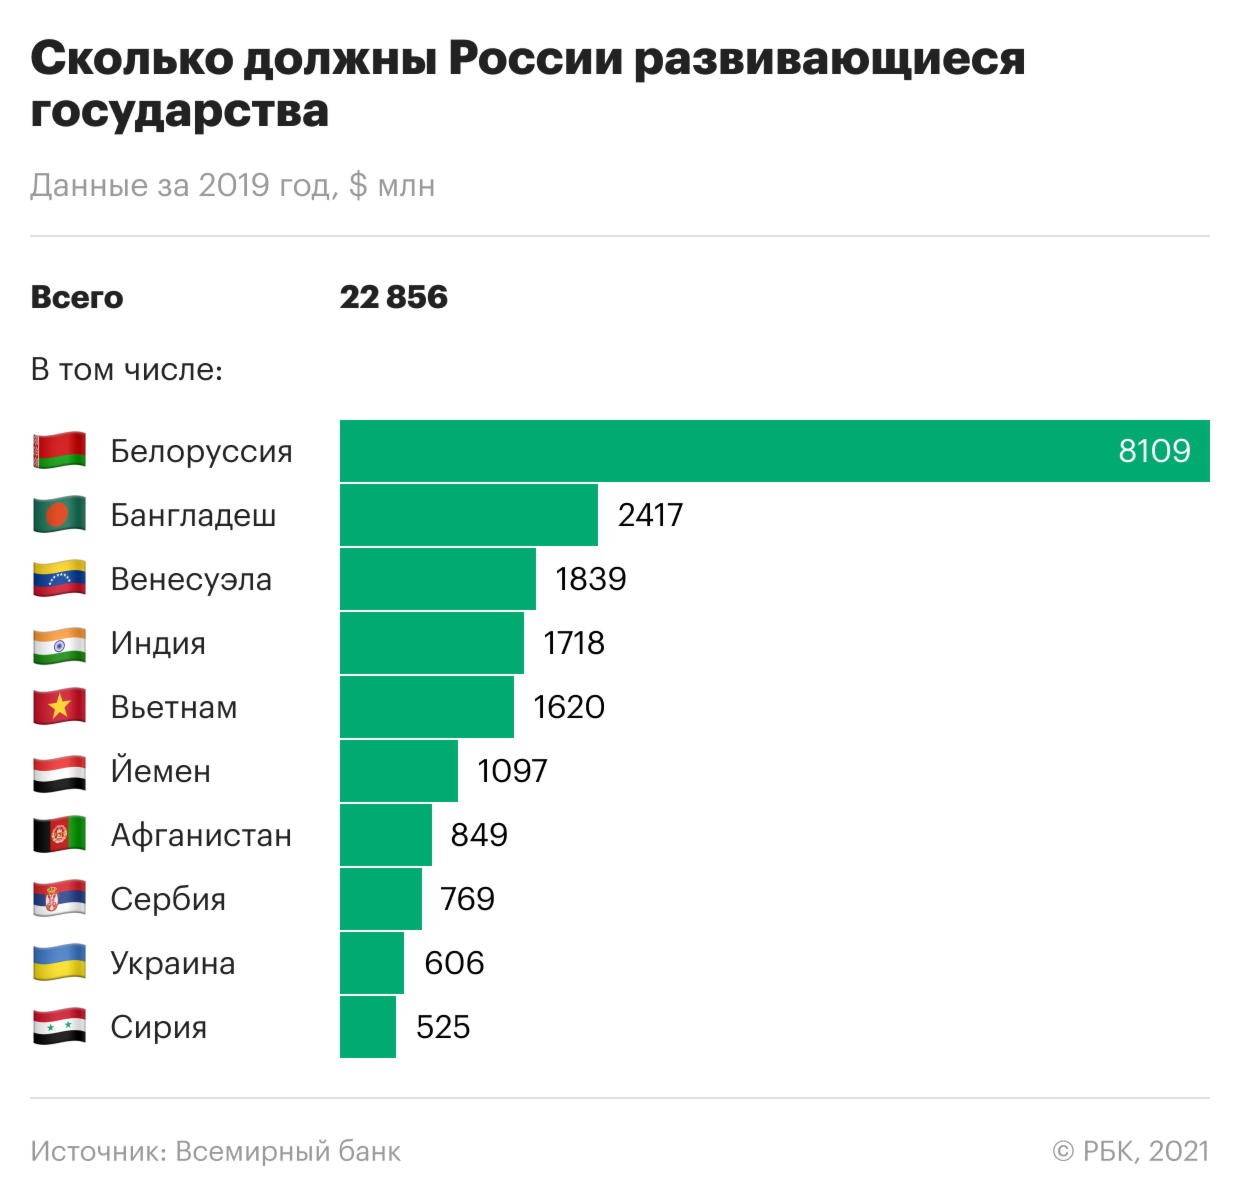 Какие страны должны России больше всего. Инфографика